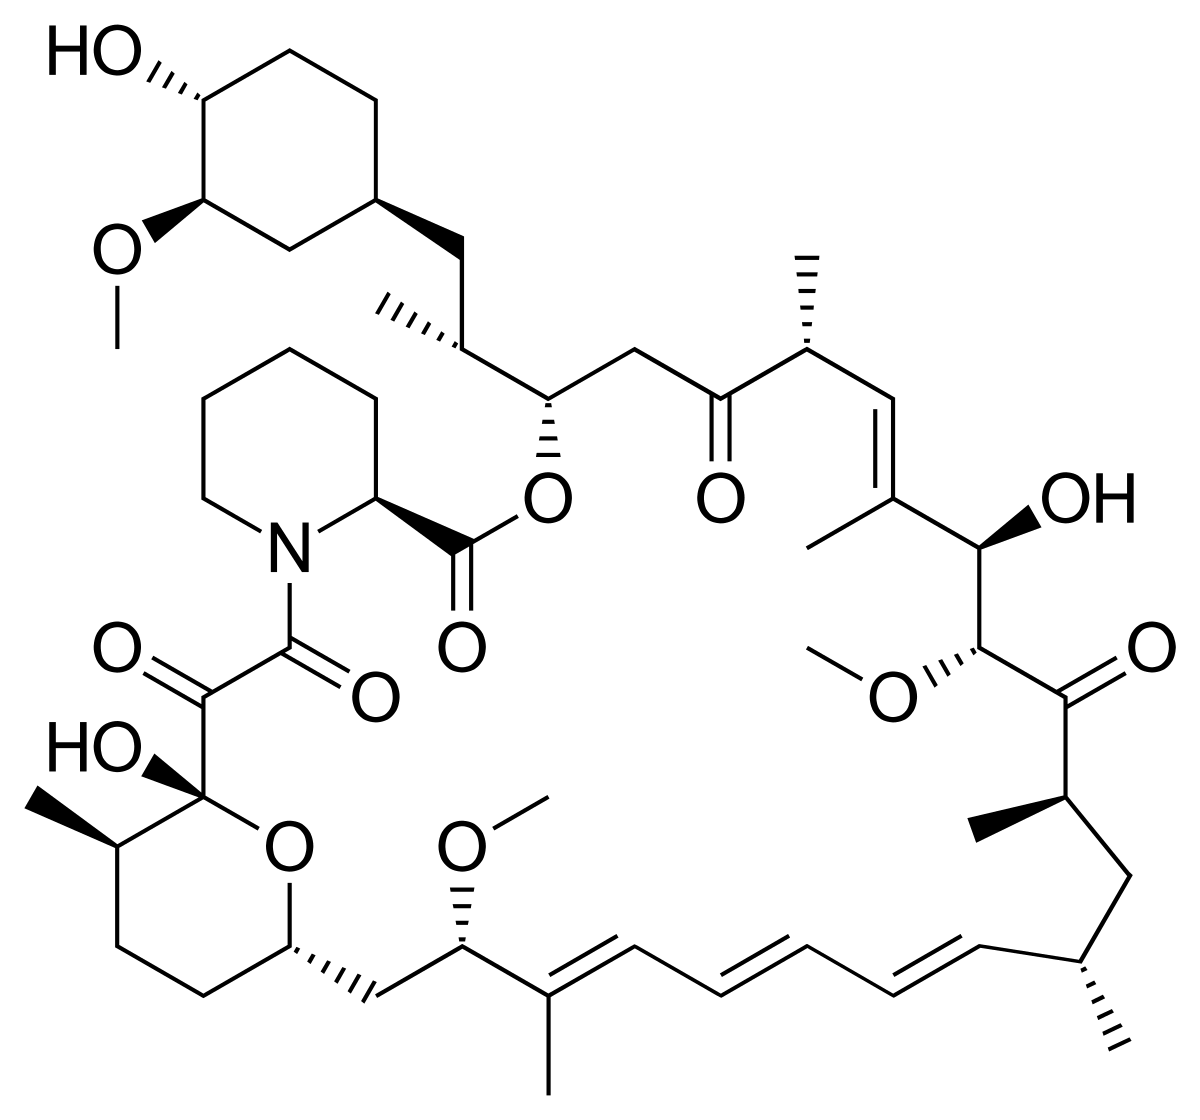 Structure of Rapamycin